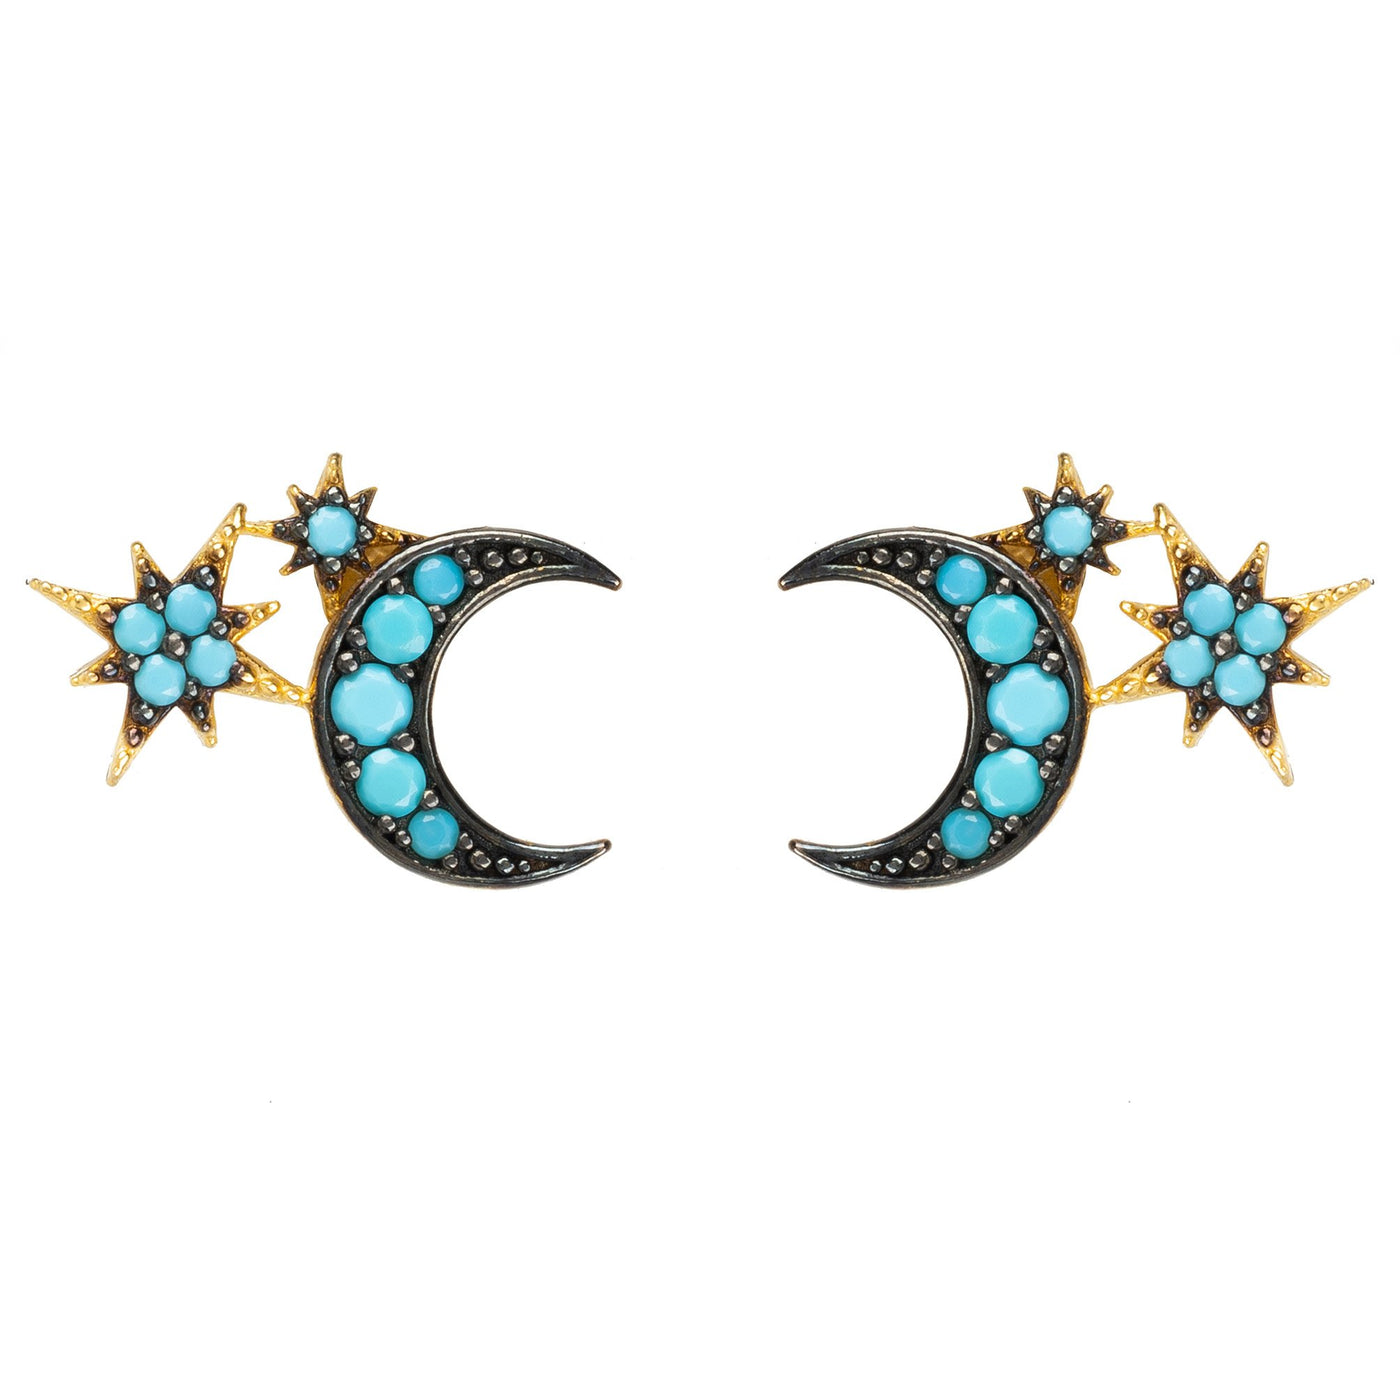 Ohrstecker - Mond und Sterne - 22 Karat vergoldet - Turquoise